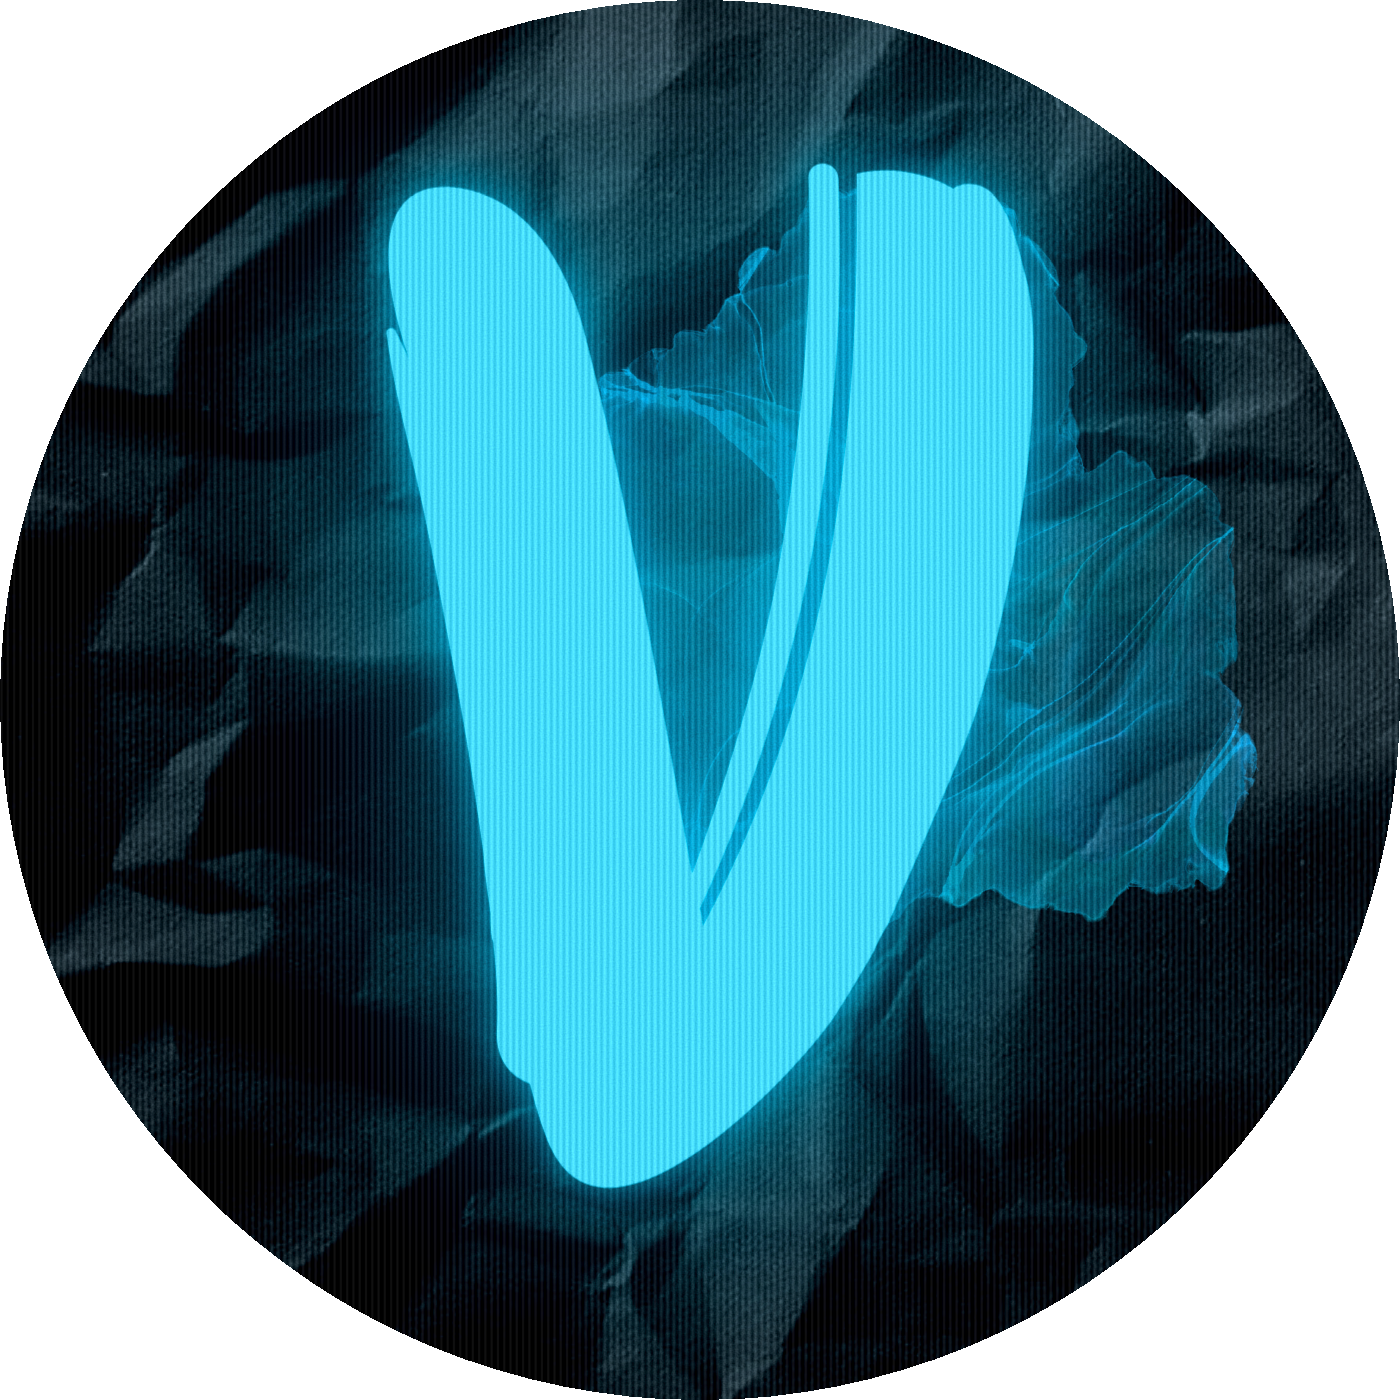 Team Velocity's logo